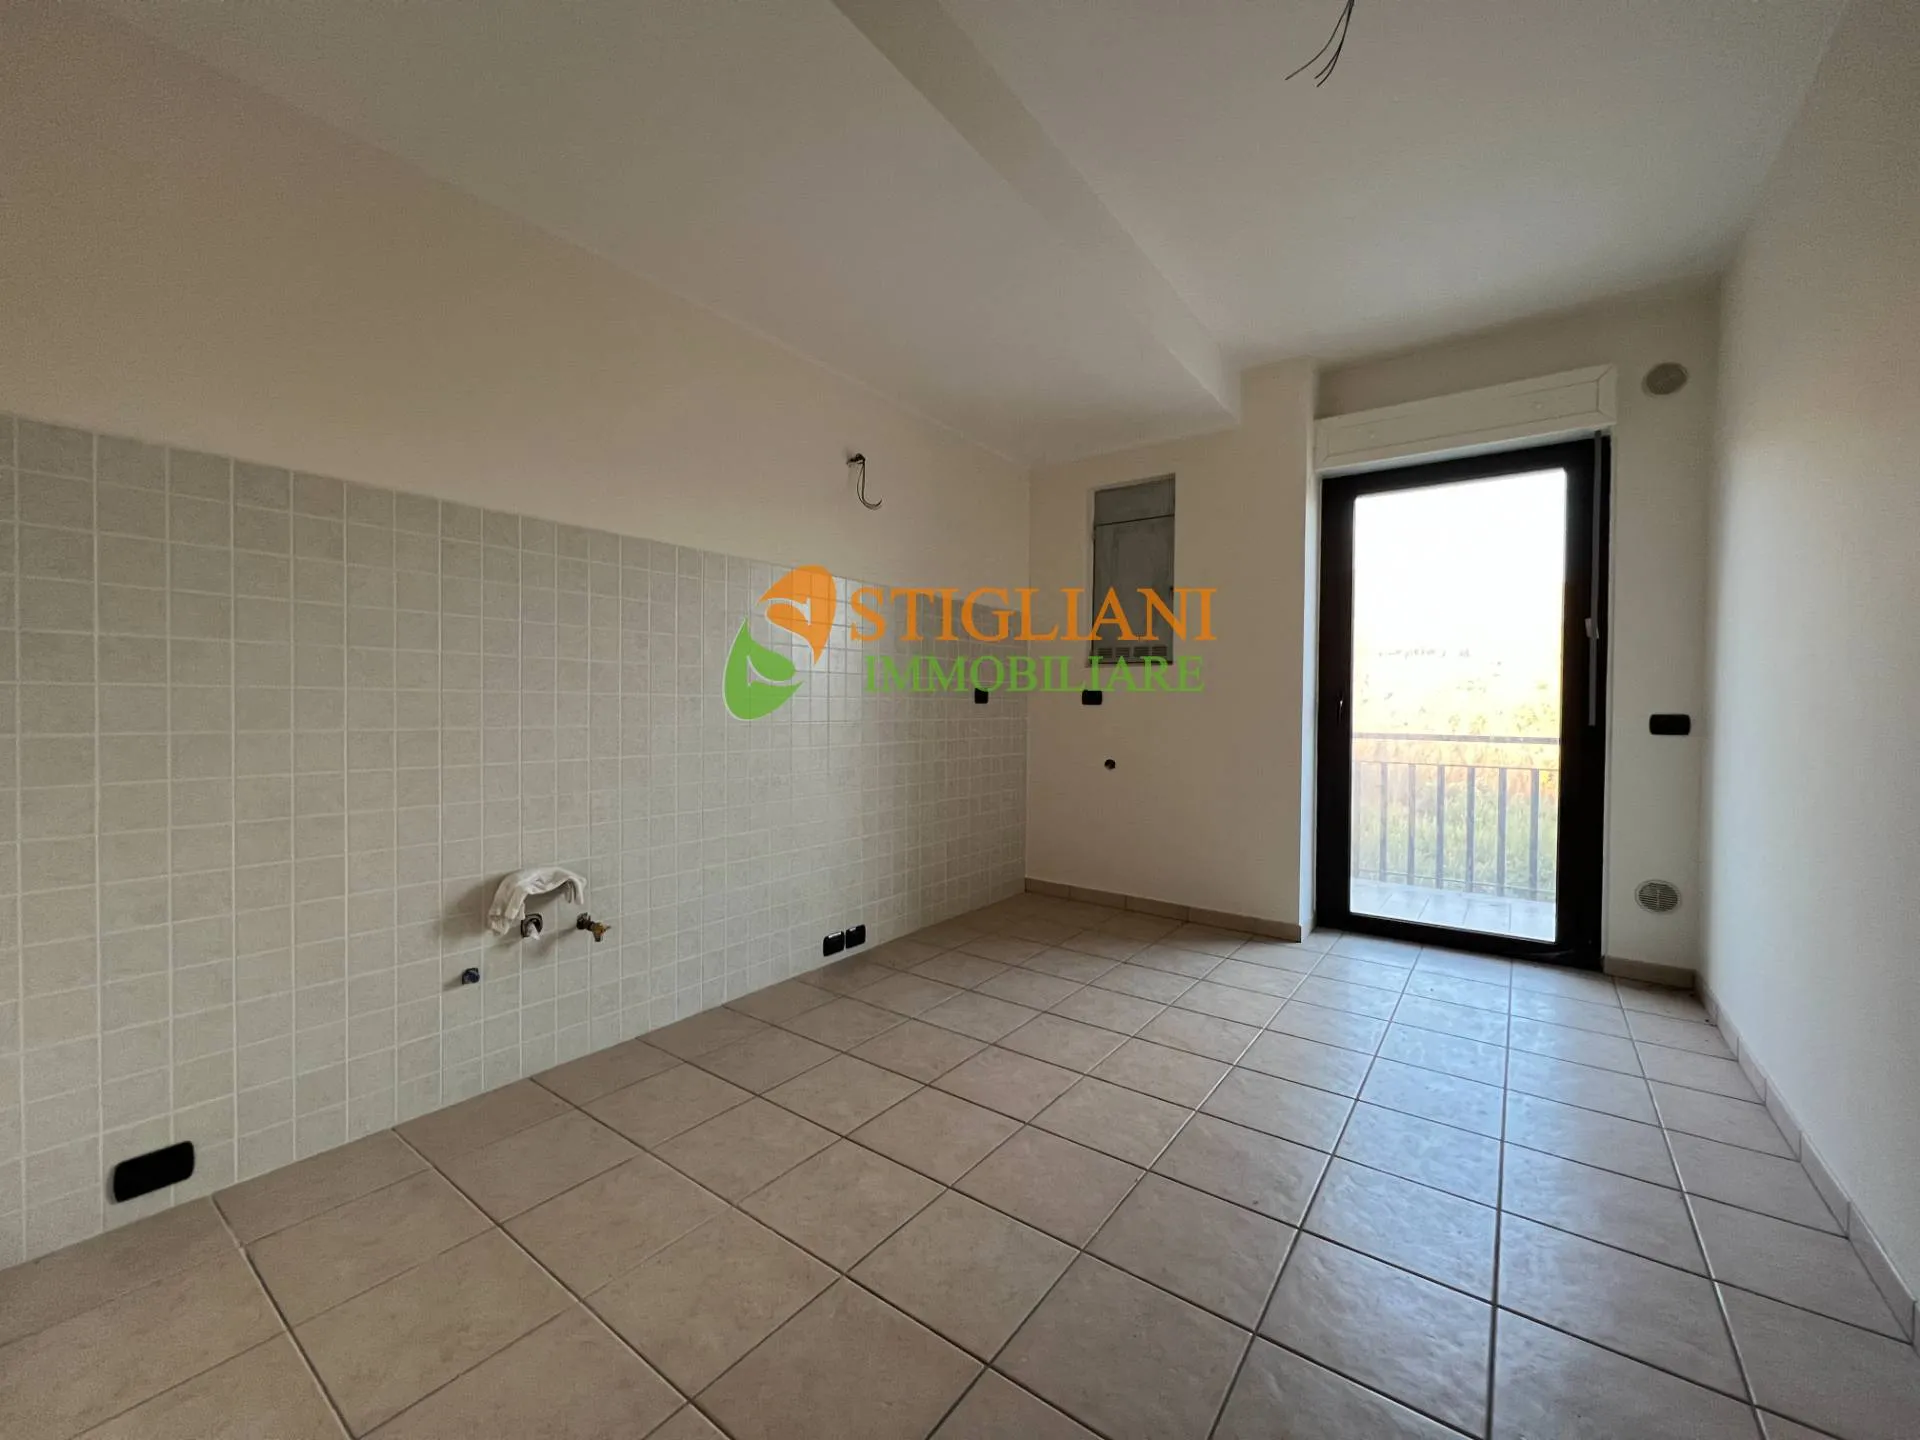 Immagine per Appartamento in vendita a Mirabello Sannitico Via Roma